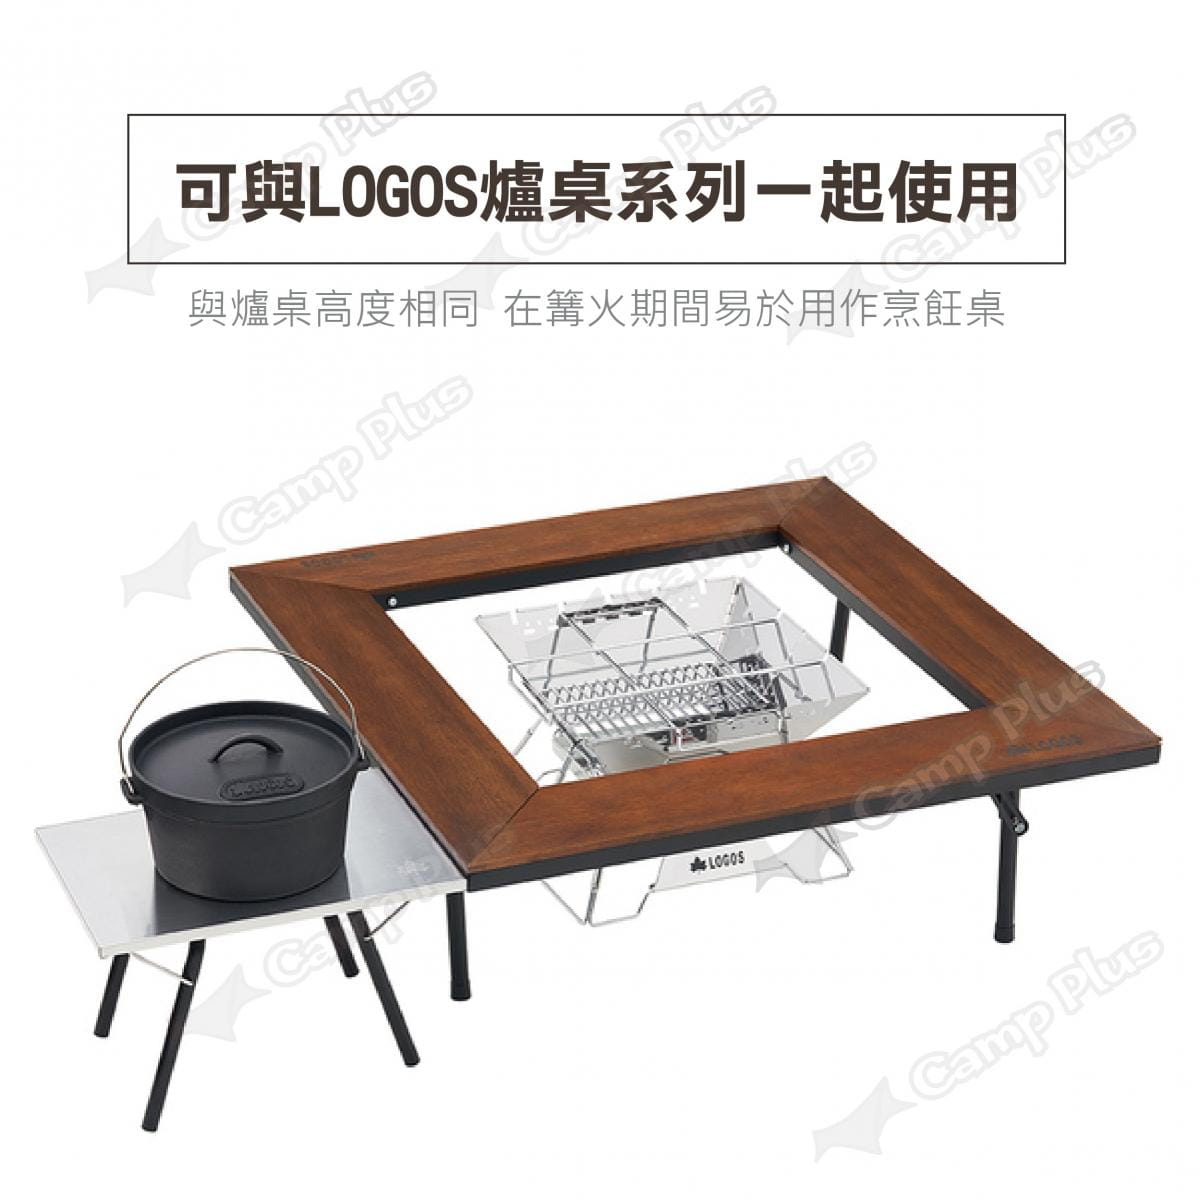 【日本LOGOS】防火不鏽鋼桌 LG73173158 (悠遊戶外) 4